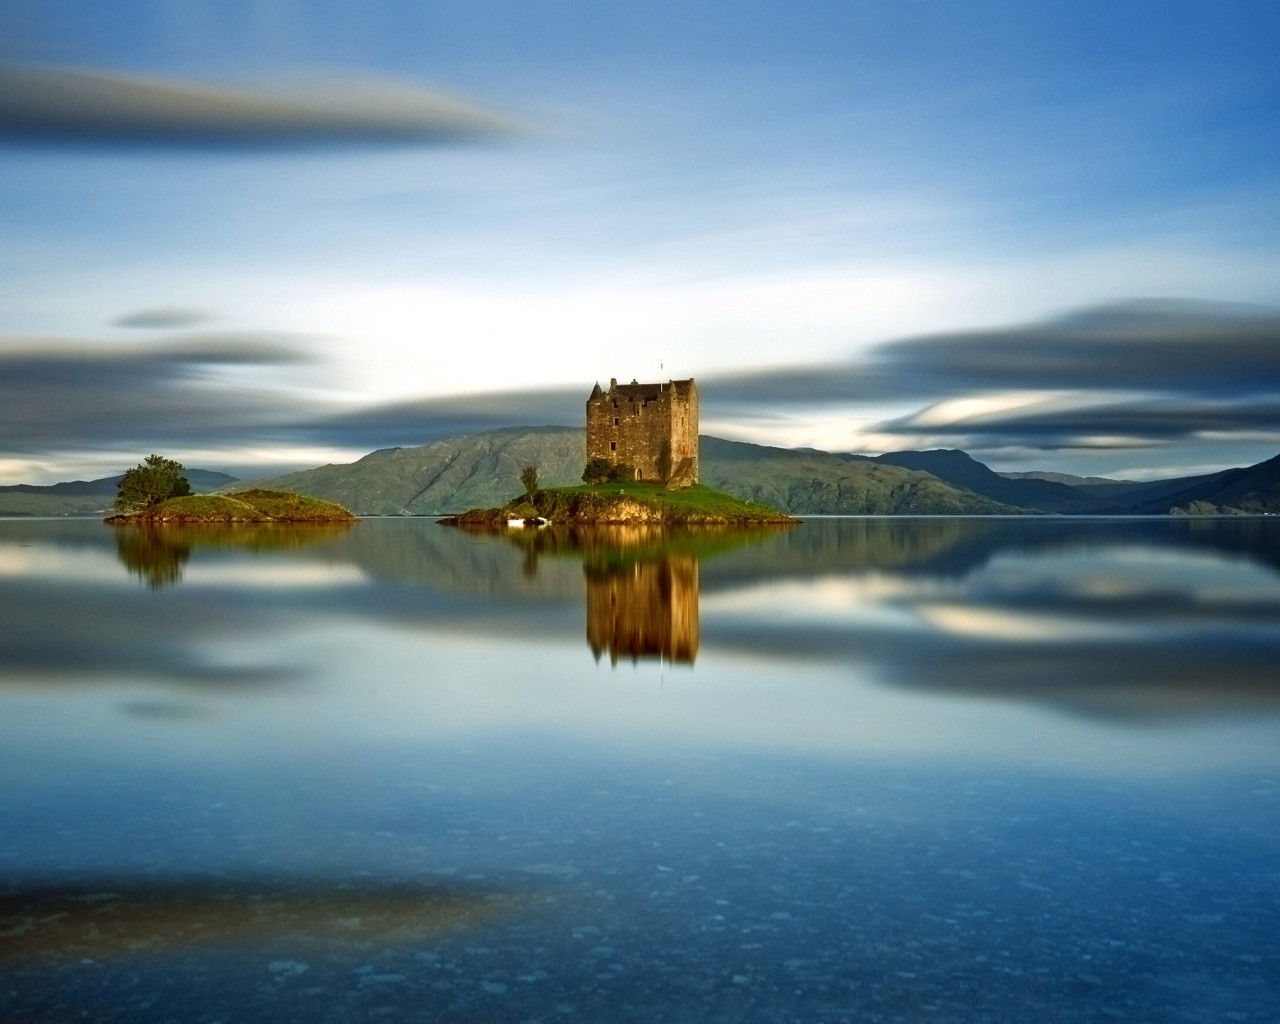 Castle Stalker Scotland for 1280 x 1024 resolution